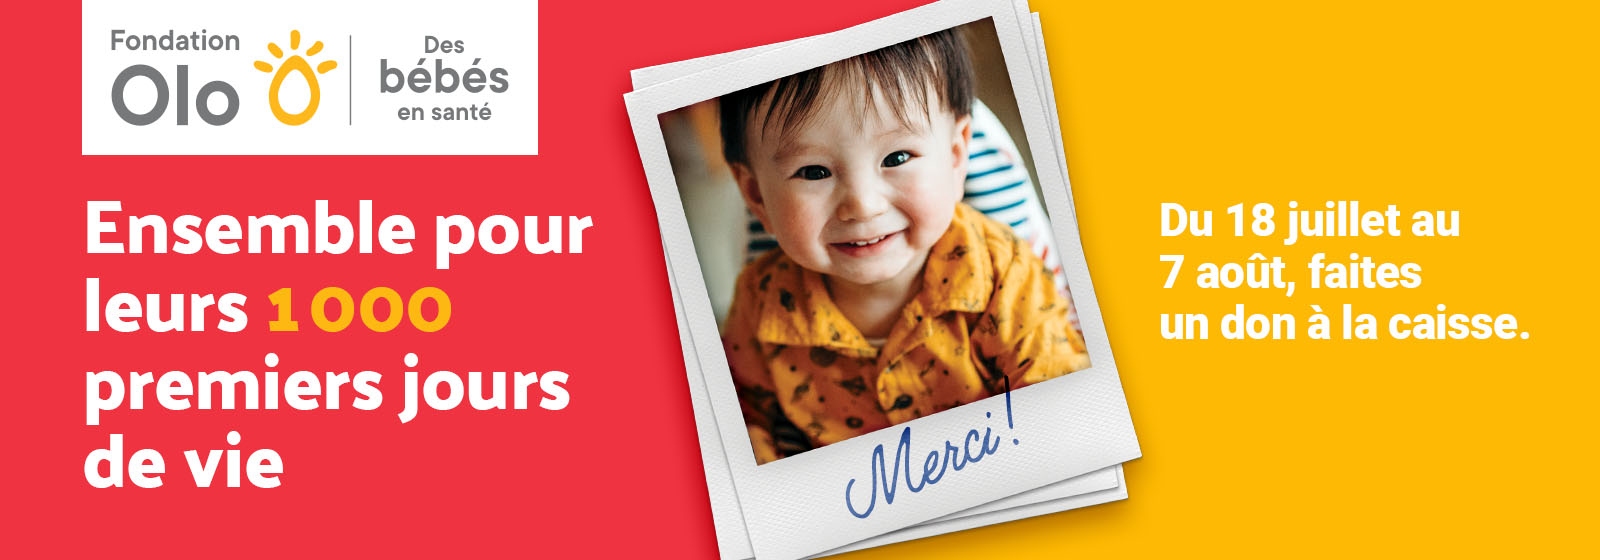 Une bannière promotionnelle de la Fondation Olo présente un bébé souriant dans une chemise orange avec « Merci ! écrit sur la photo. Le texte dit : "Ensemble pour leurs 1 000 premiers jours de vie. Du 18 juillet au 7 août, faites un don à la caisse.